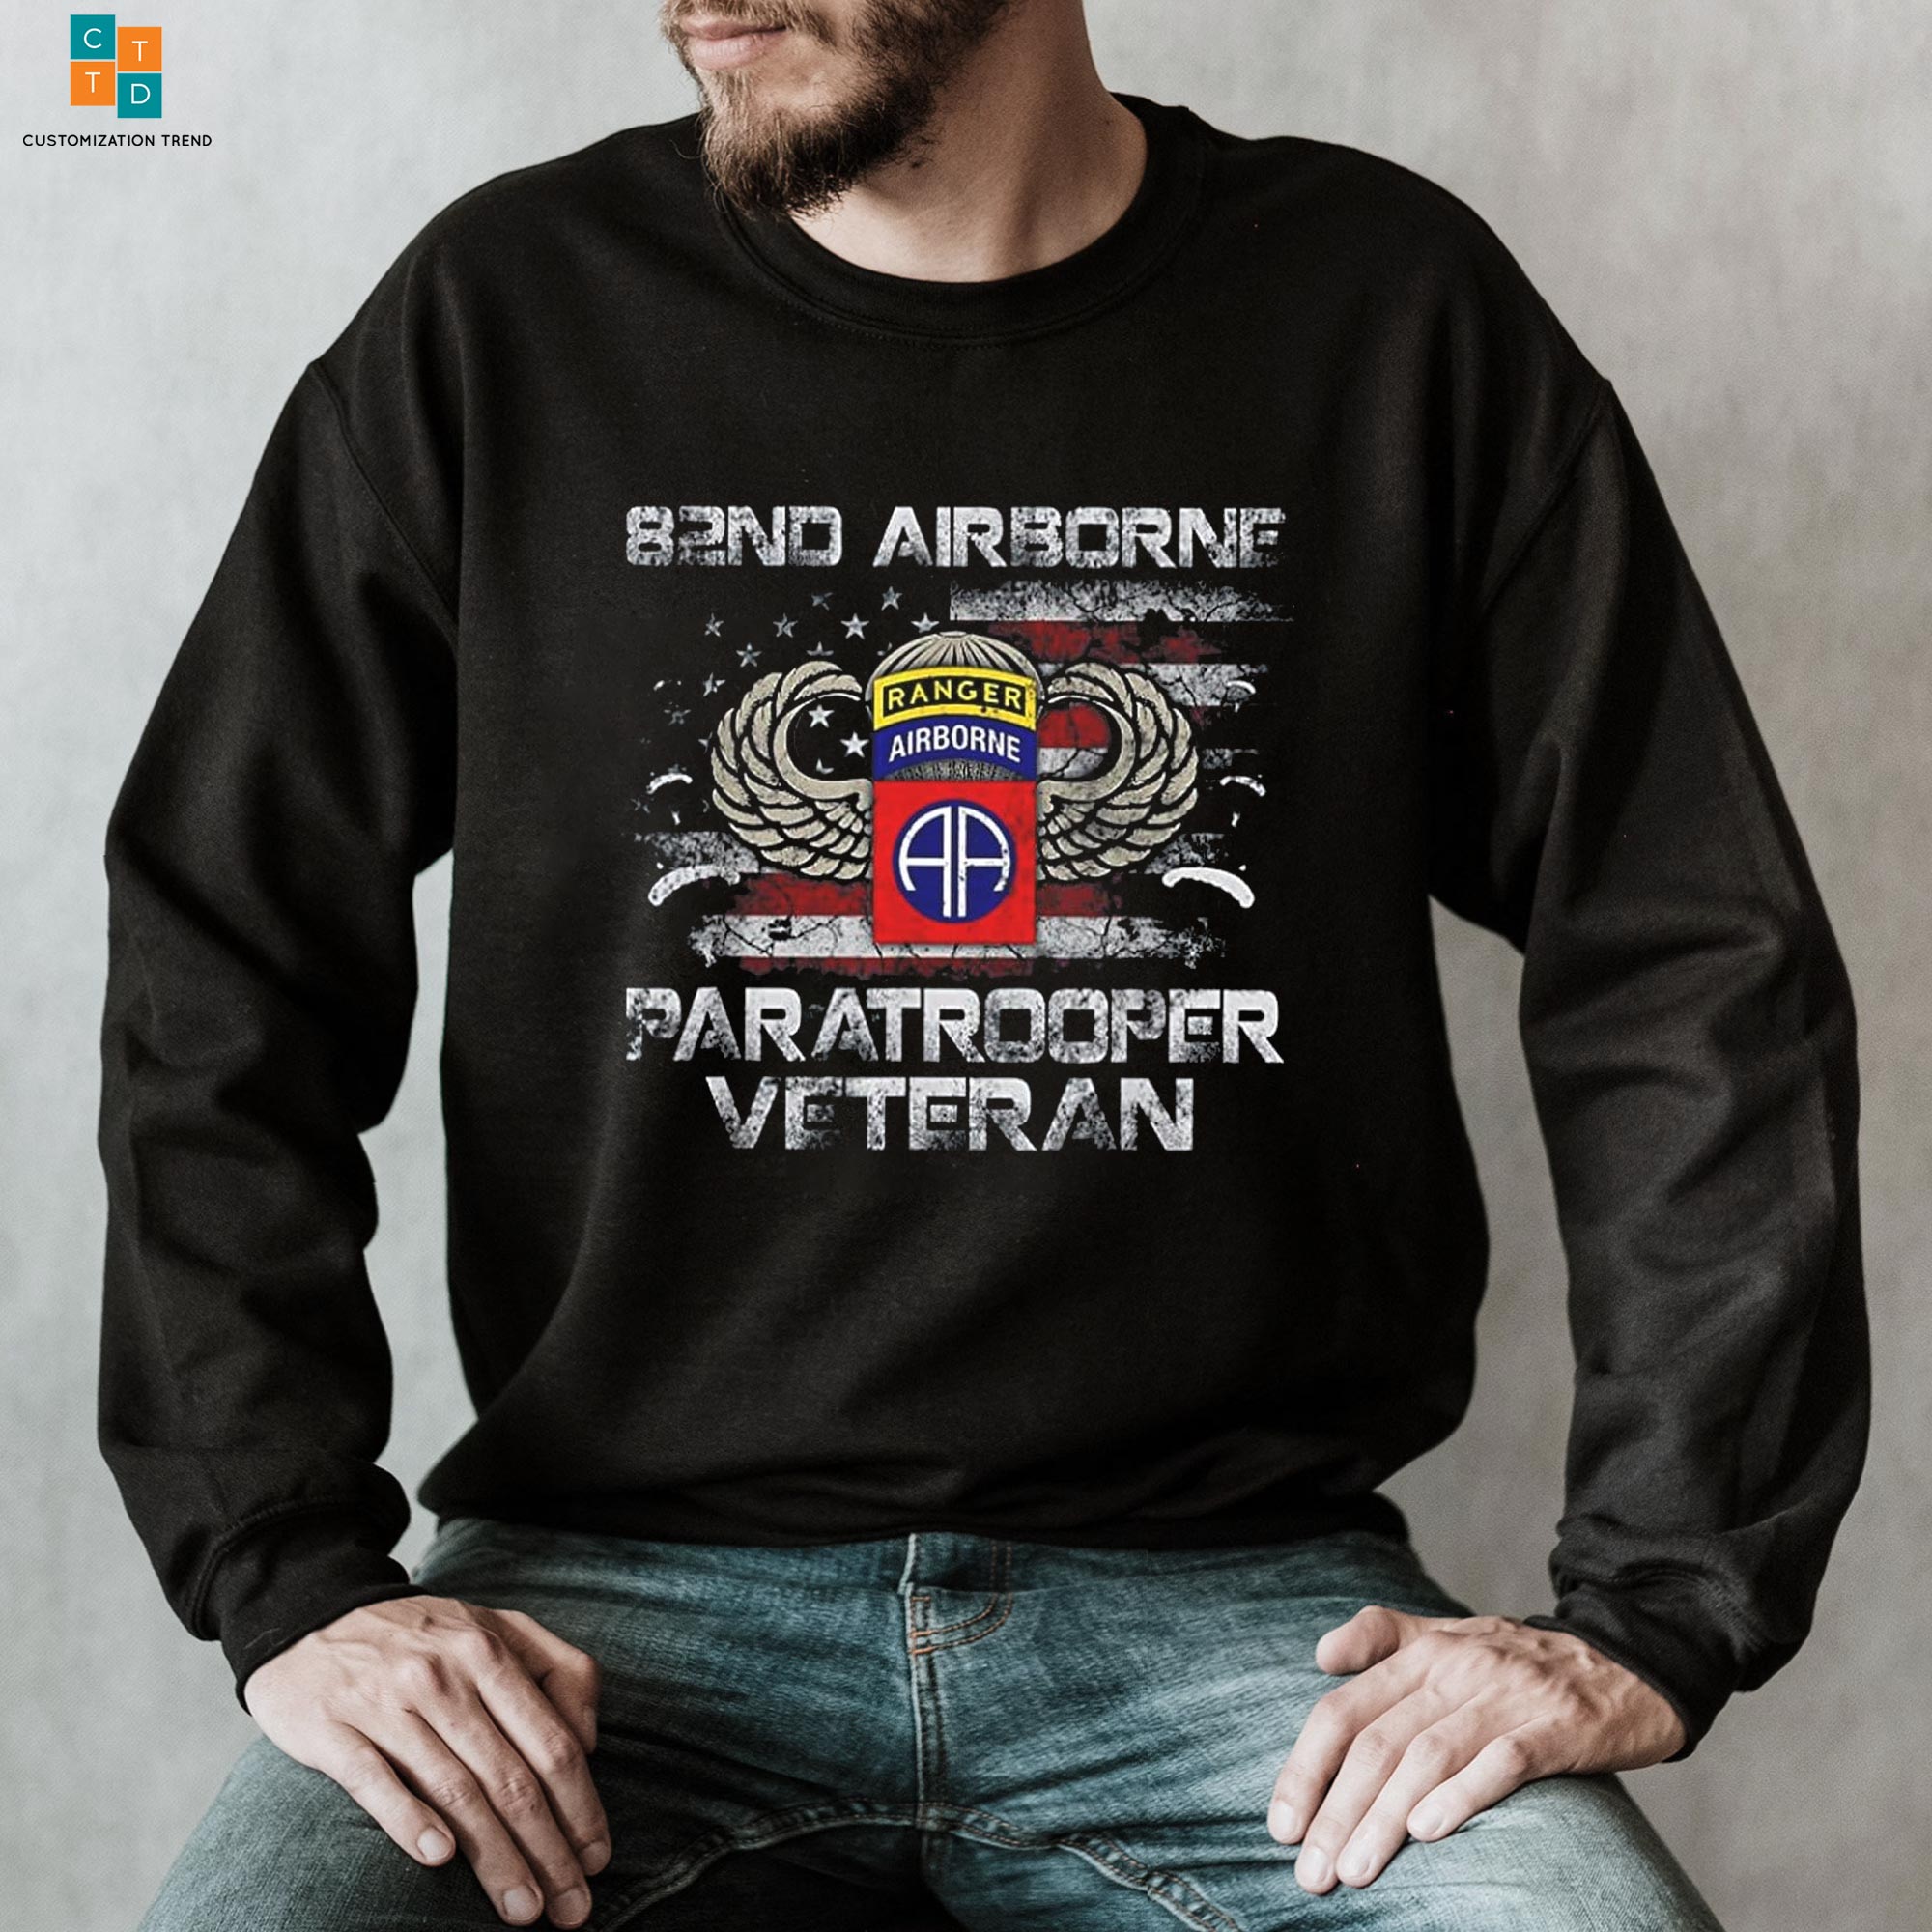 B2ND Airborne Paratrooper Veteran Hoodie, Shirt